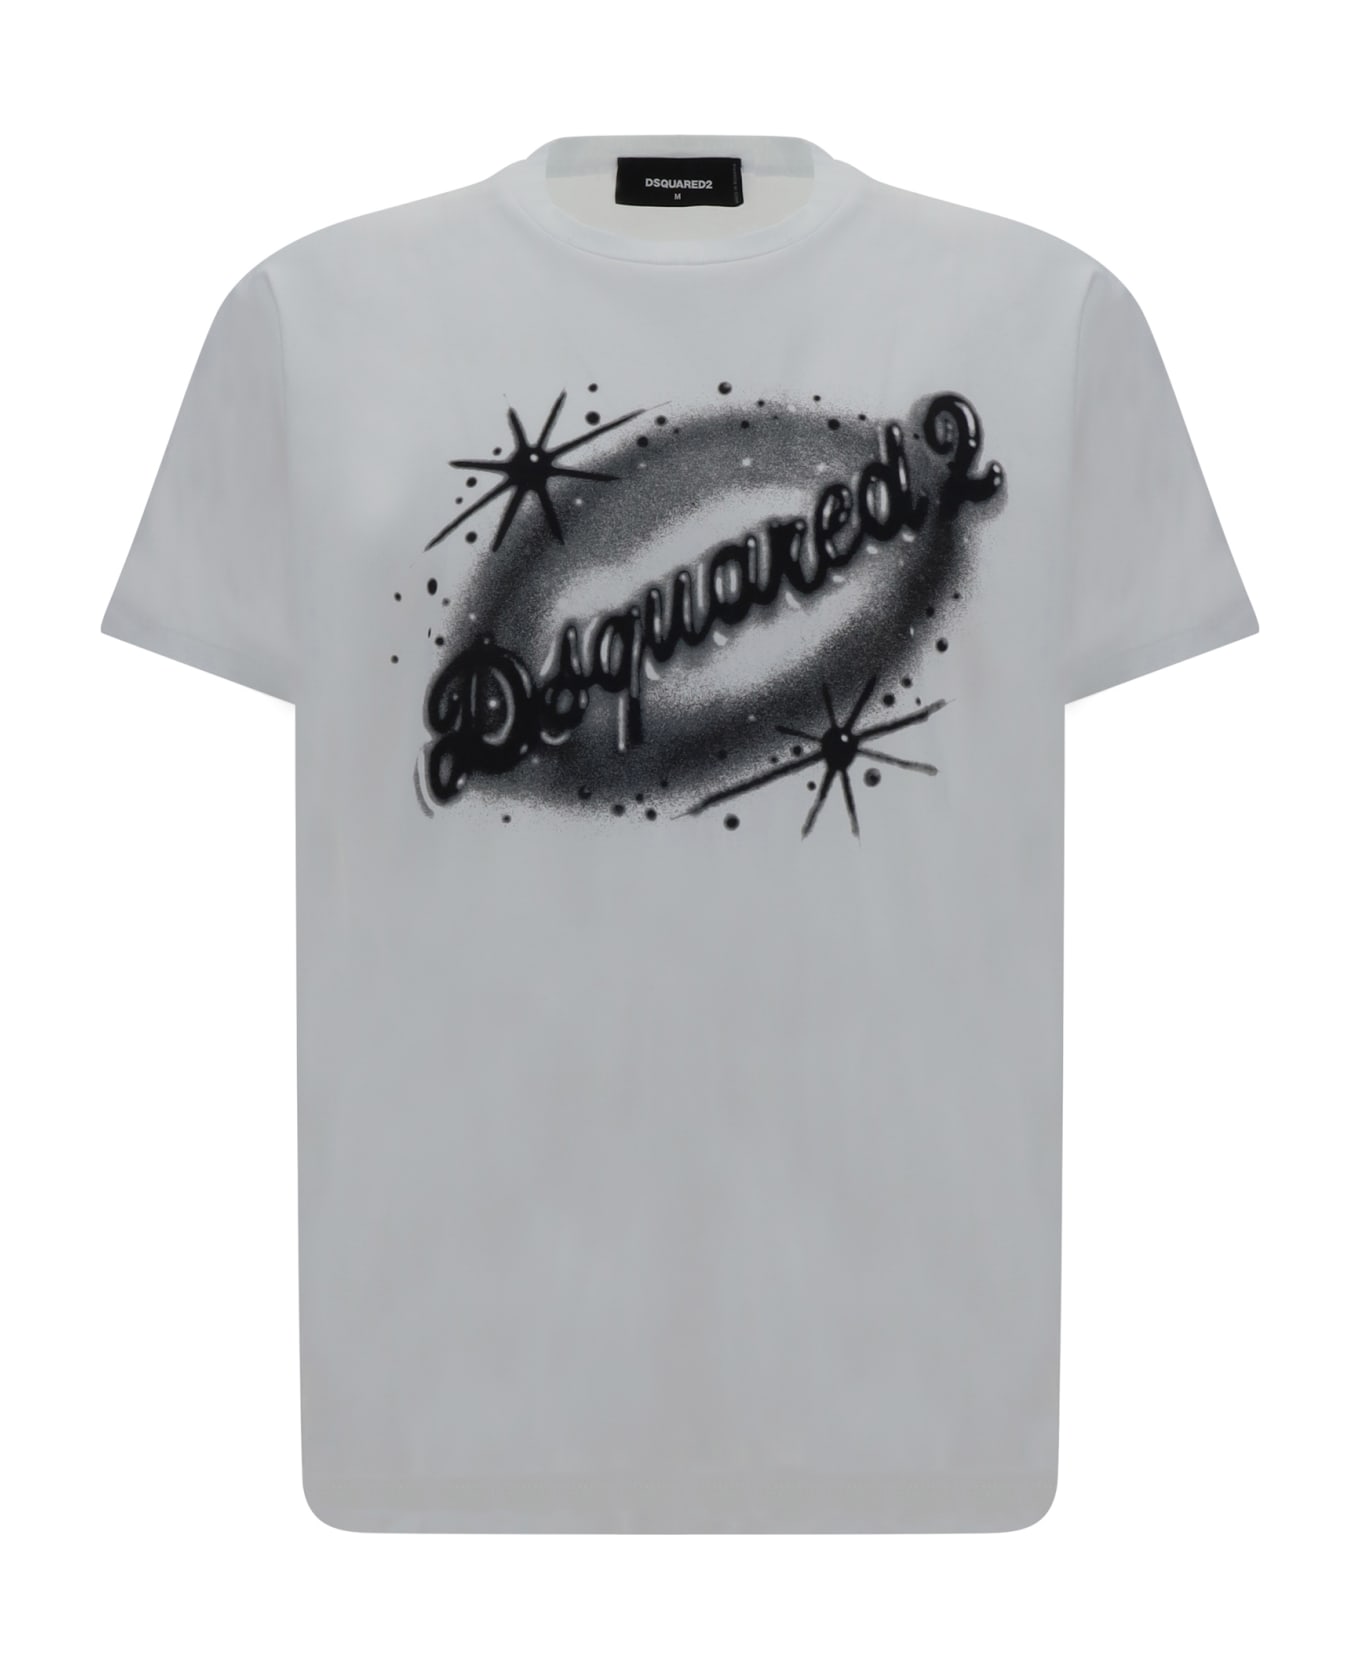 Dsquared2 T-shirt - White